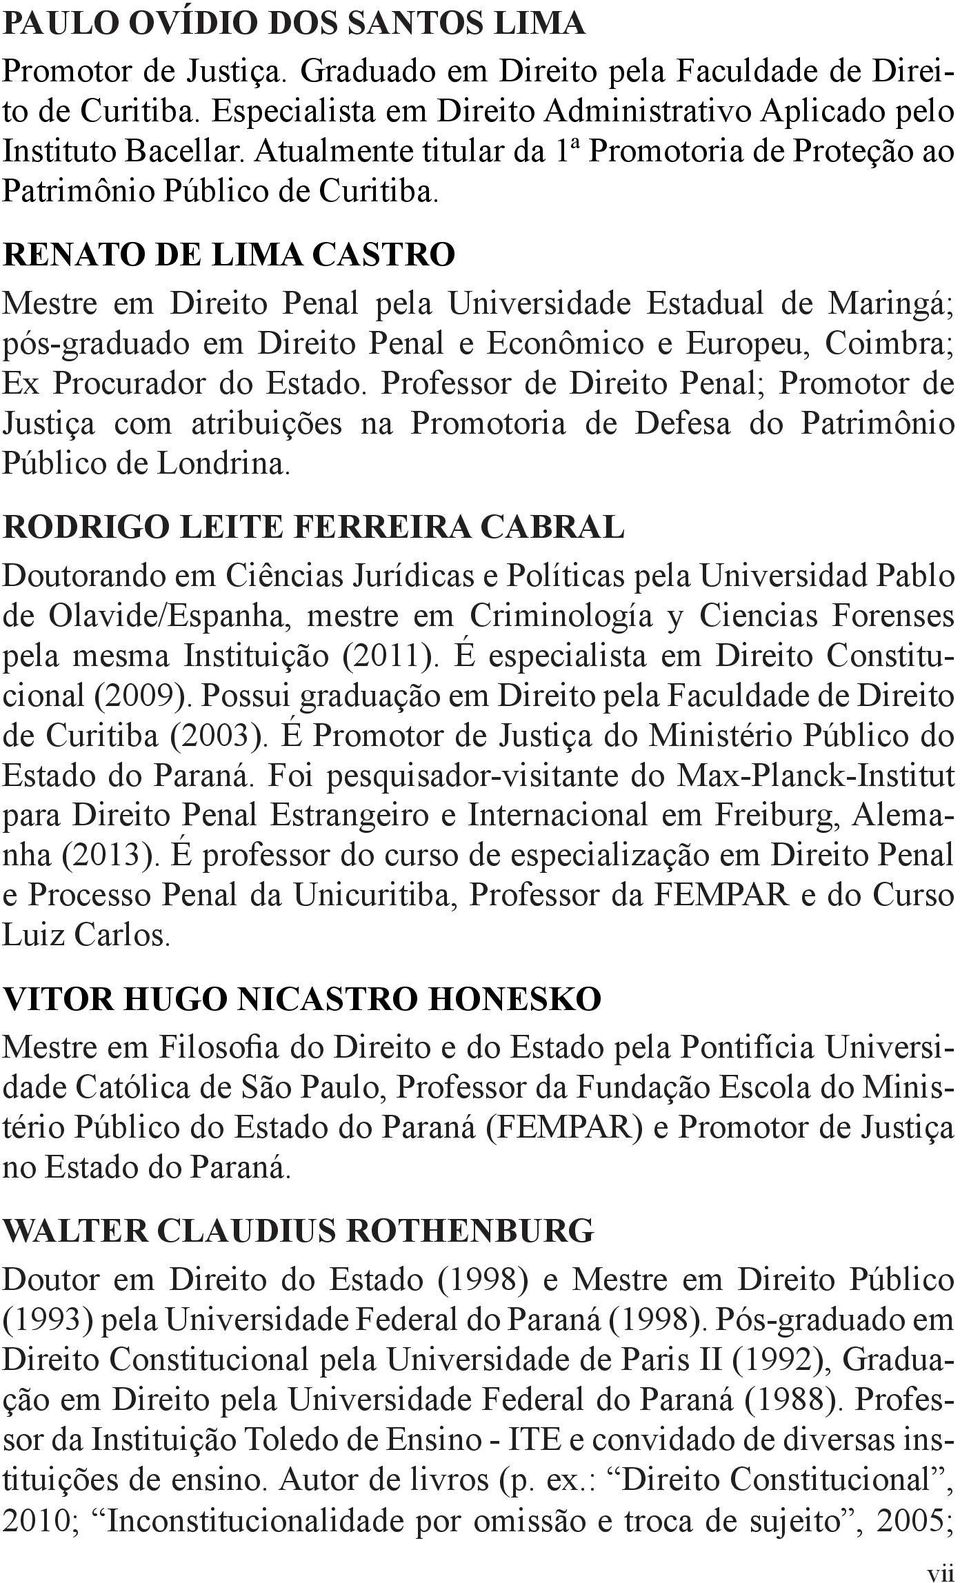 RENATO DE LIMA CASTRO Mestre em Direito Penal pela Universidade Estadual de Maringá; pós-graduado em Direito Penal e Econômico e Europeu, Coimbra; Ex Procurador do Estado.